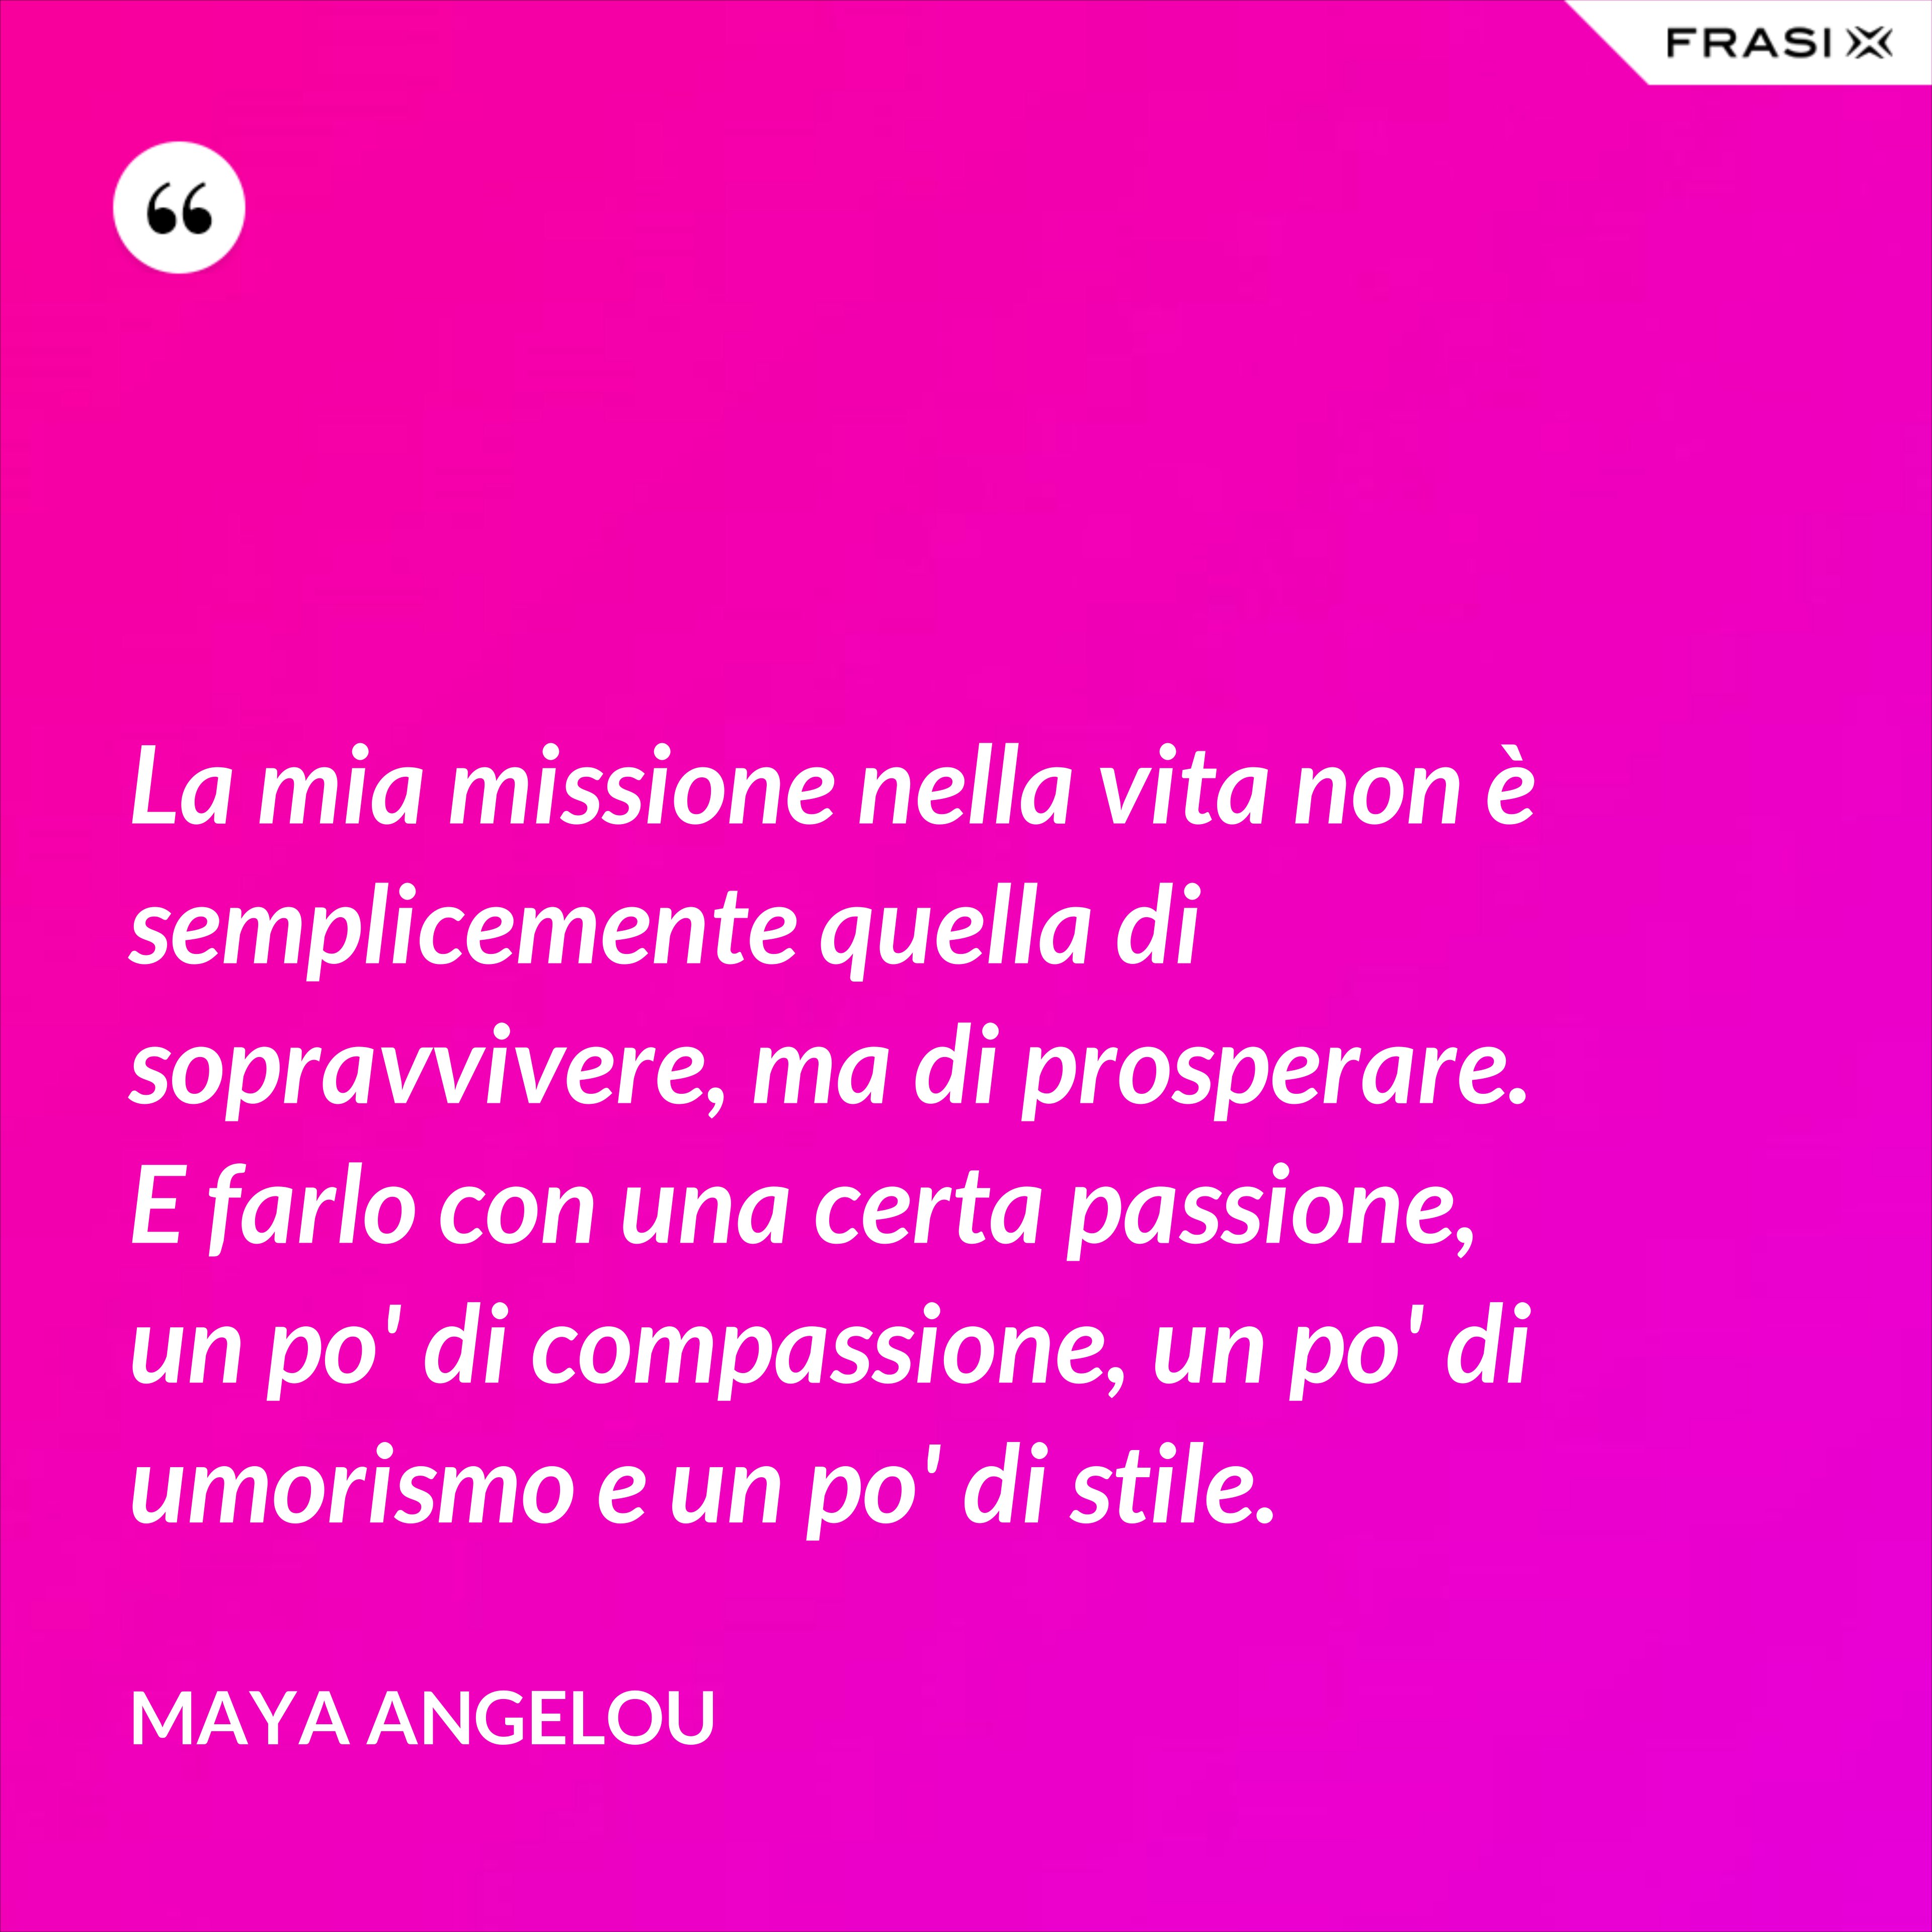 La mia missione nella vita non è semplicemente quella di sopravvivere, ma di prosperare. E farlo con una certa passione, un po' di compassione, un po' di umorismo e un po' di stile. - Maya Angelou